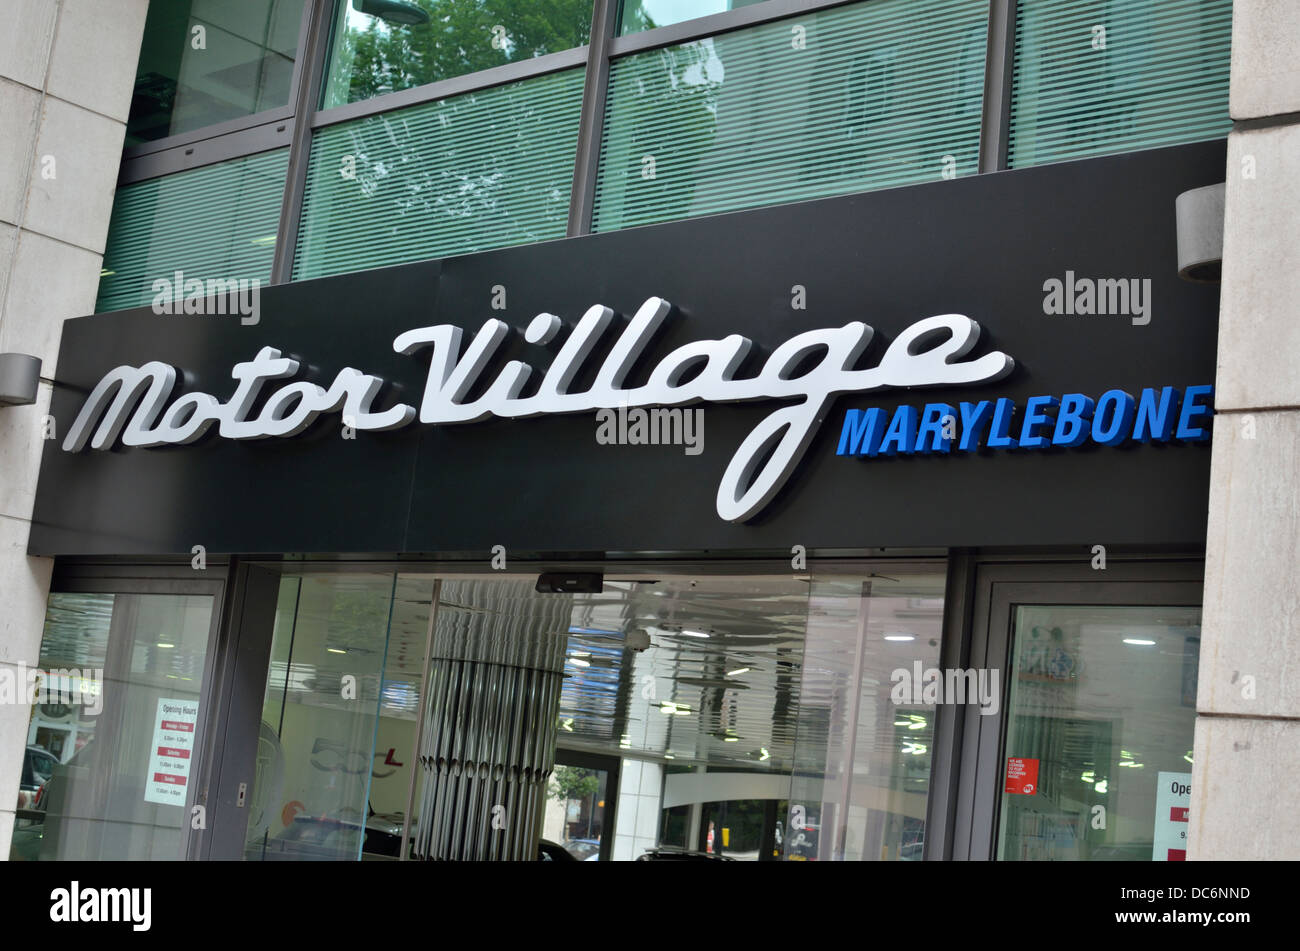 Motor Village car dealer shop in Marylebone, London, UK. Stock Photo